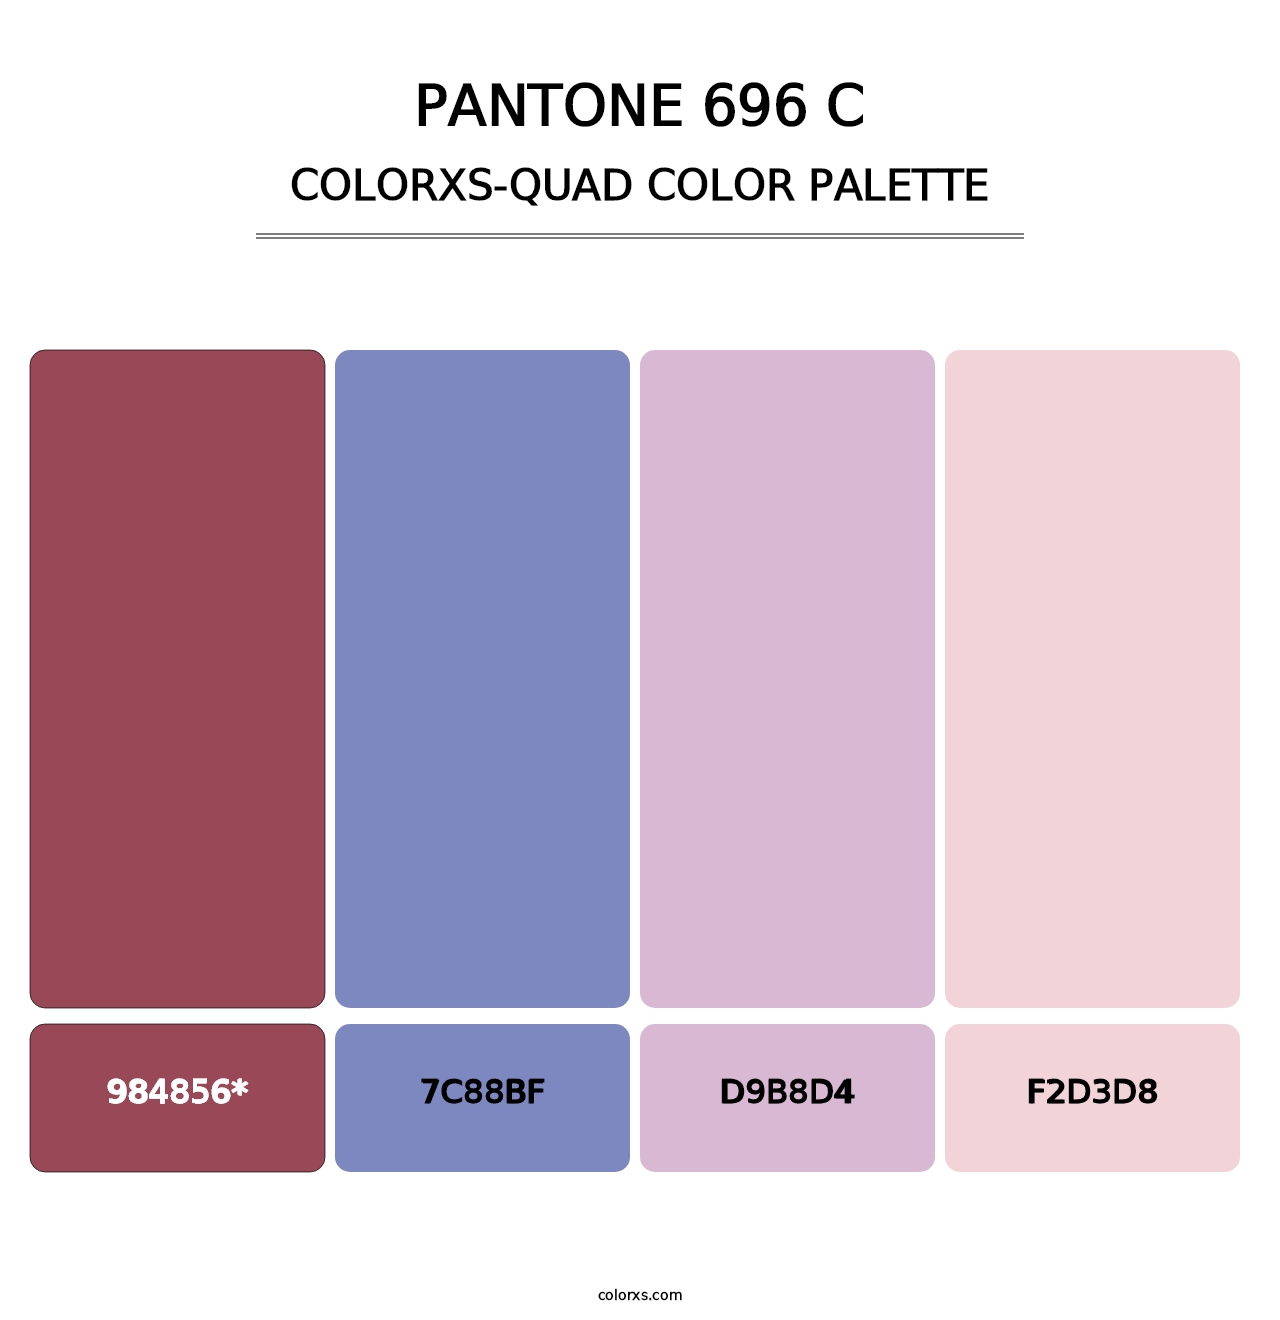 PANTONE 696 C - Colorxs Quad Palette